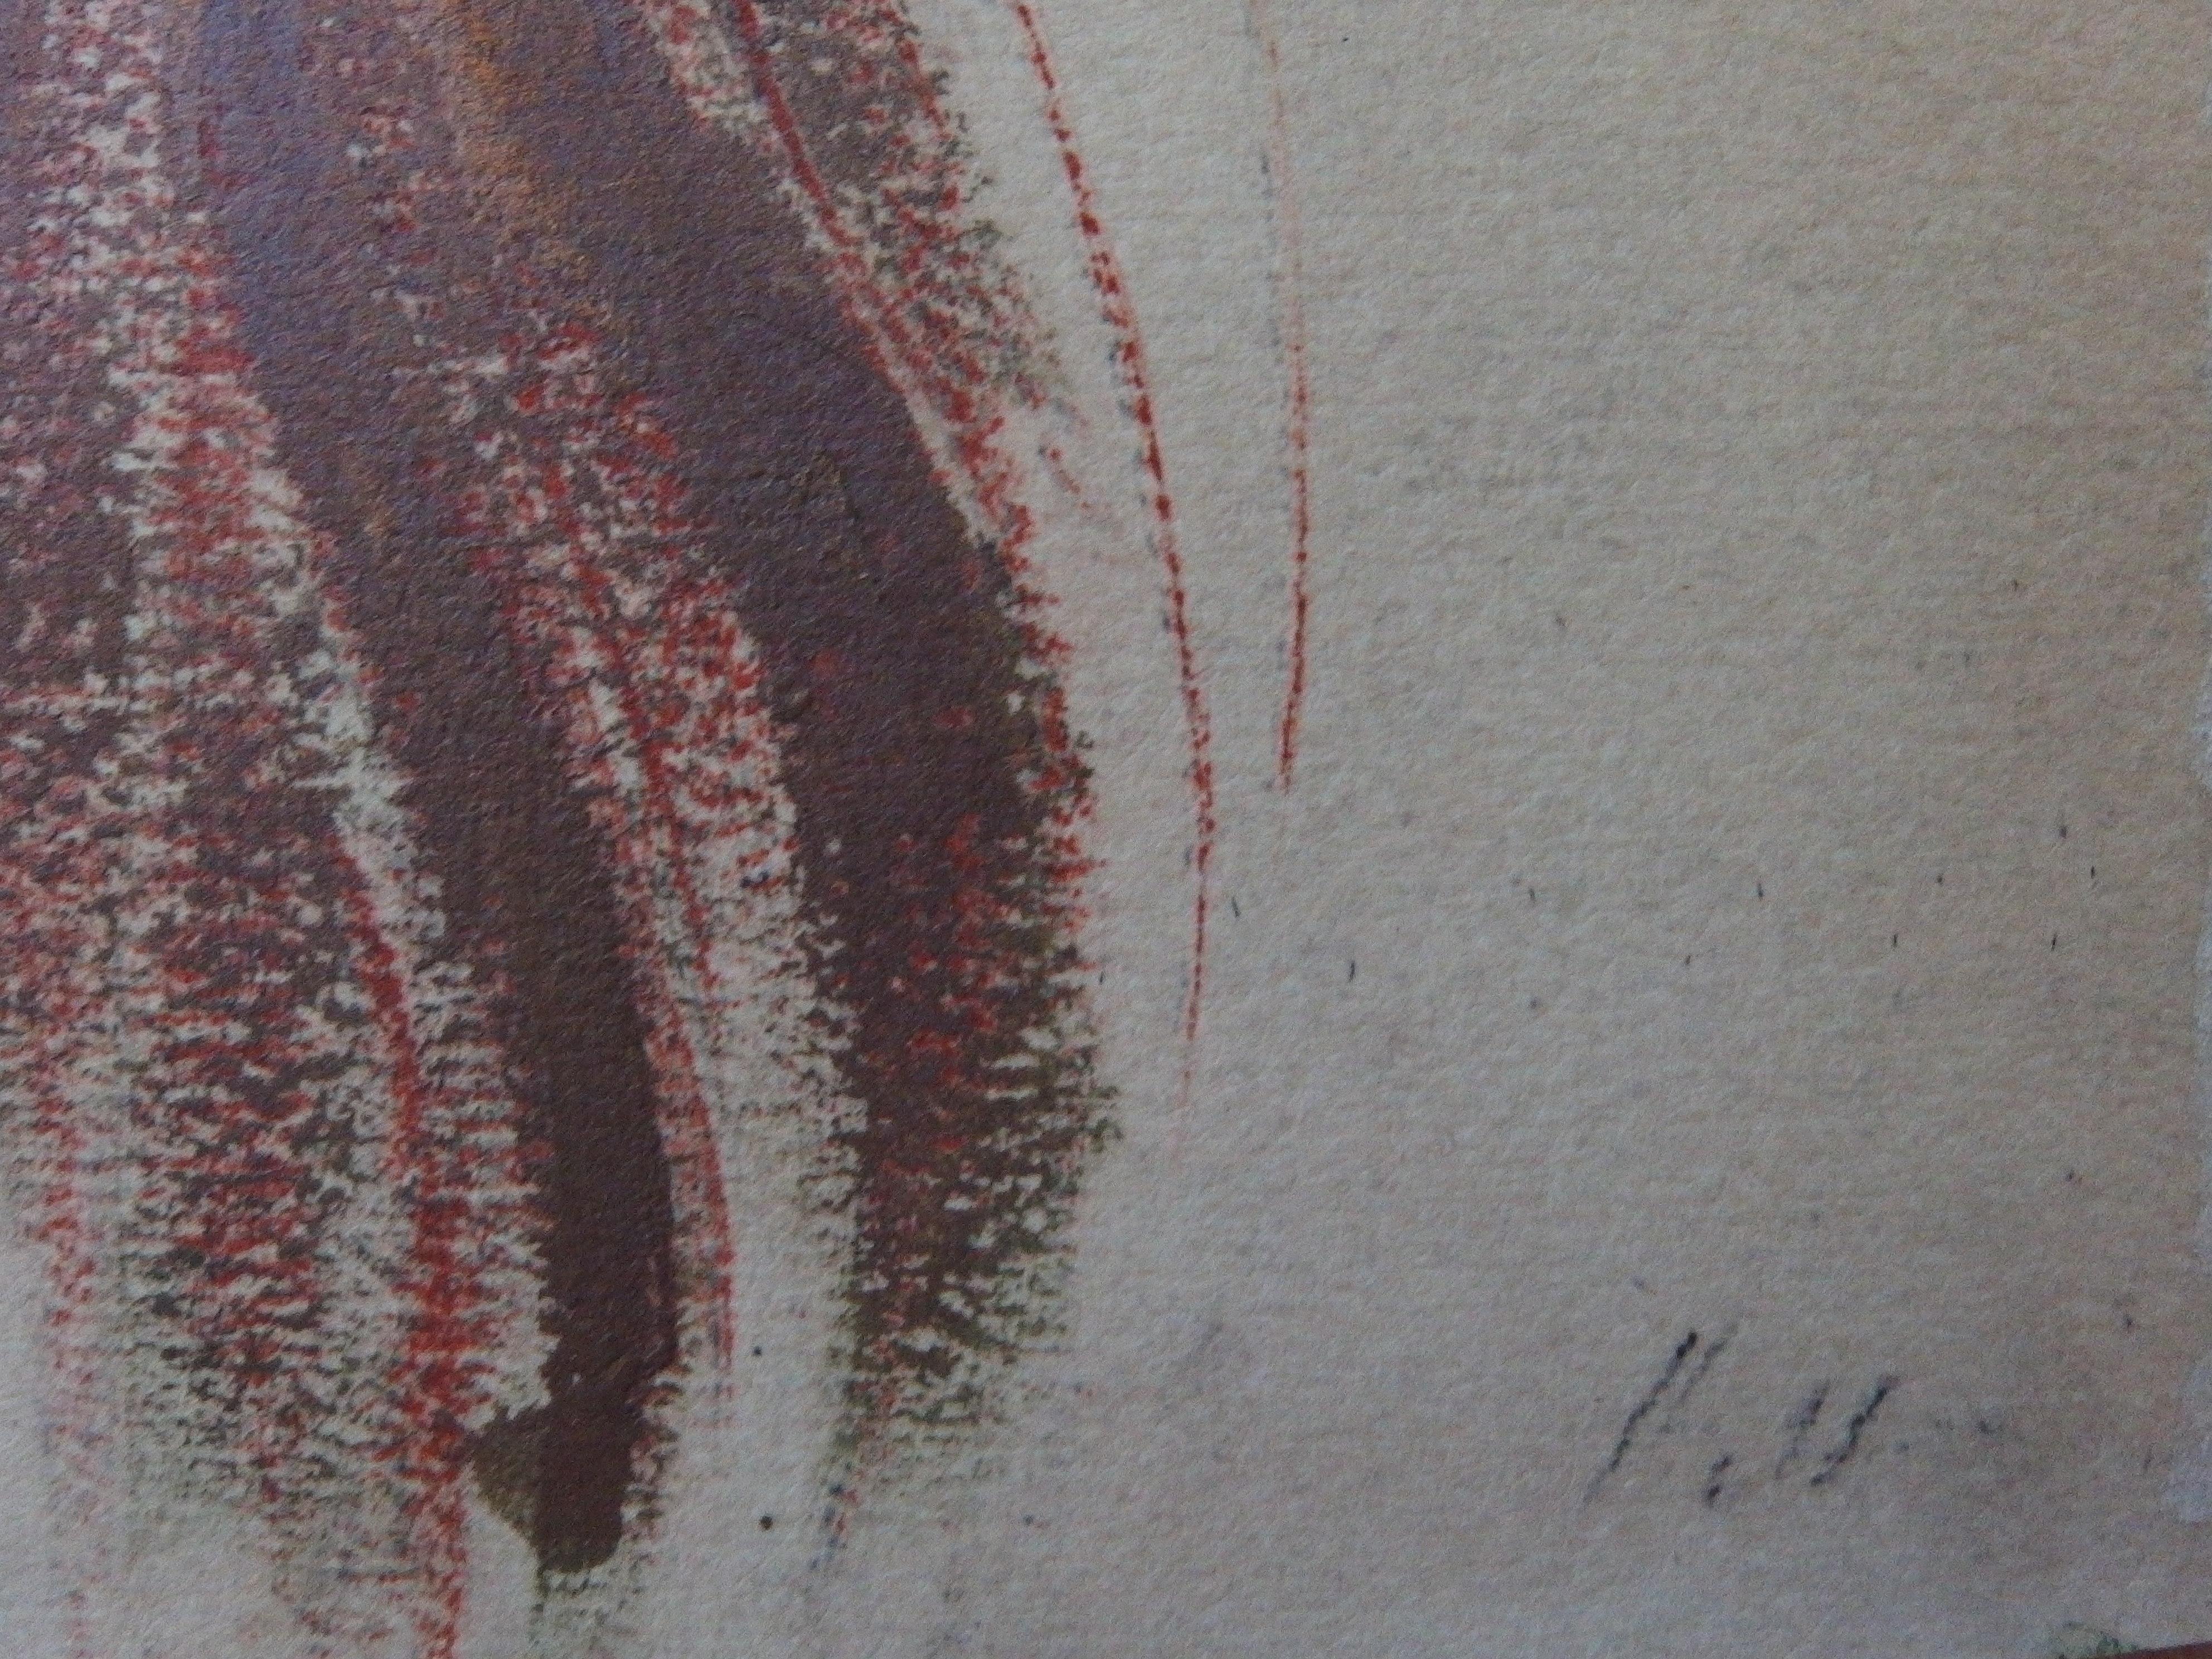 Shy Red Hair Woman - Lithograph - Print by Paul César Helleu